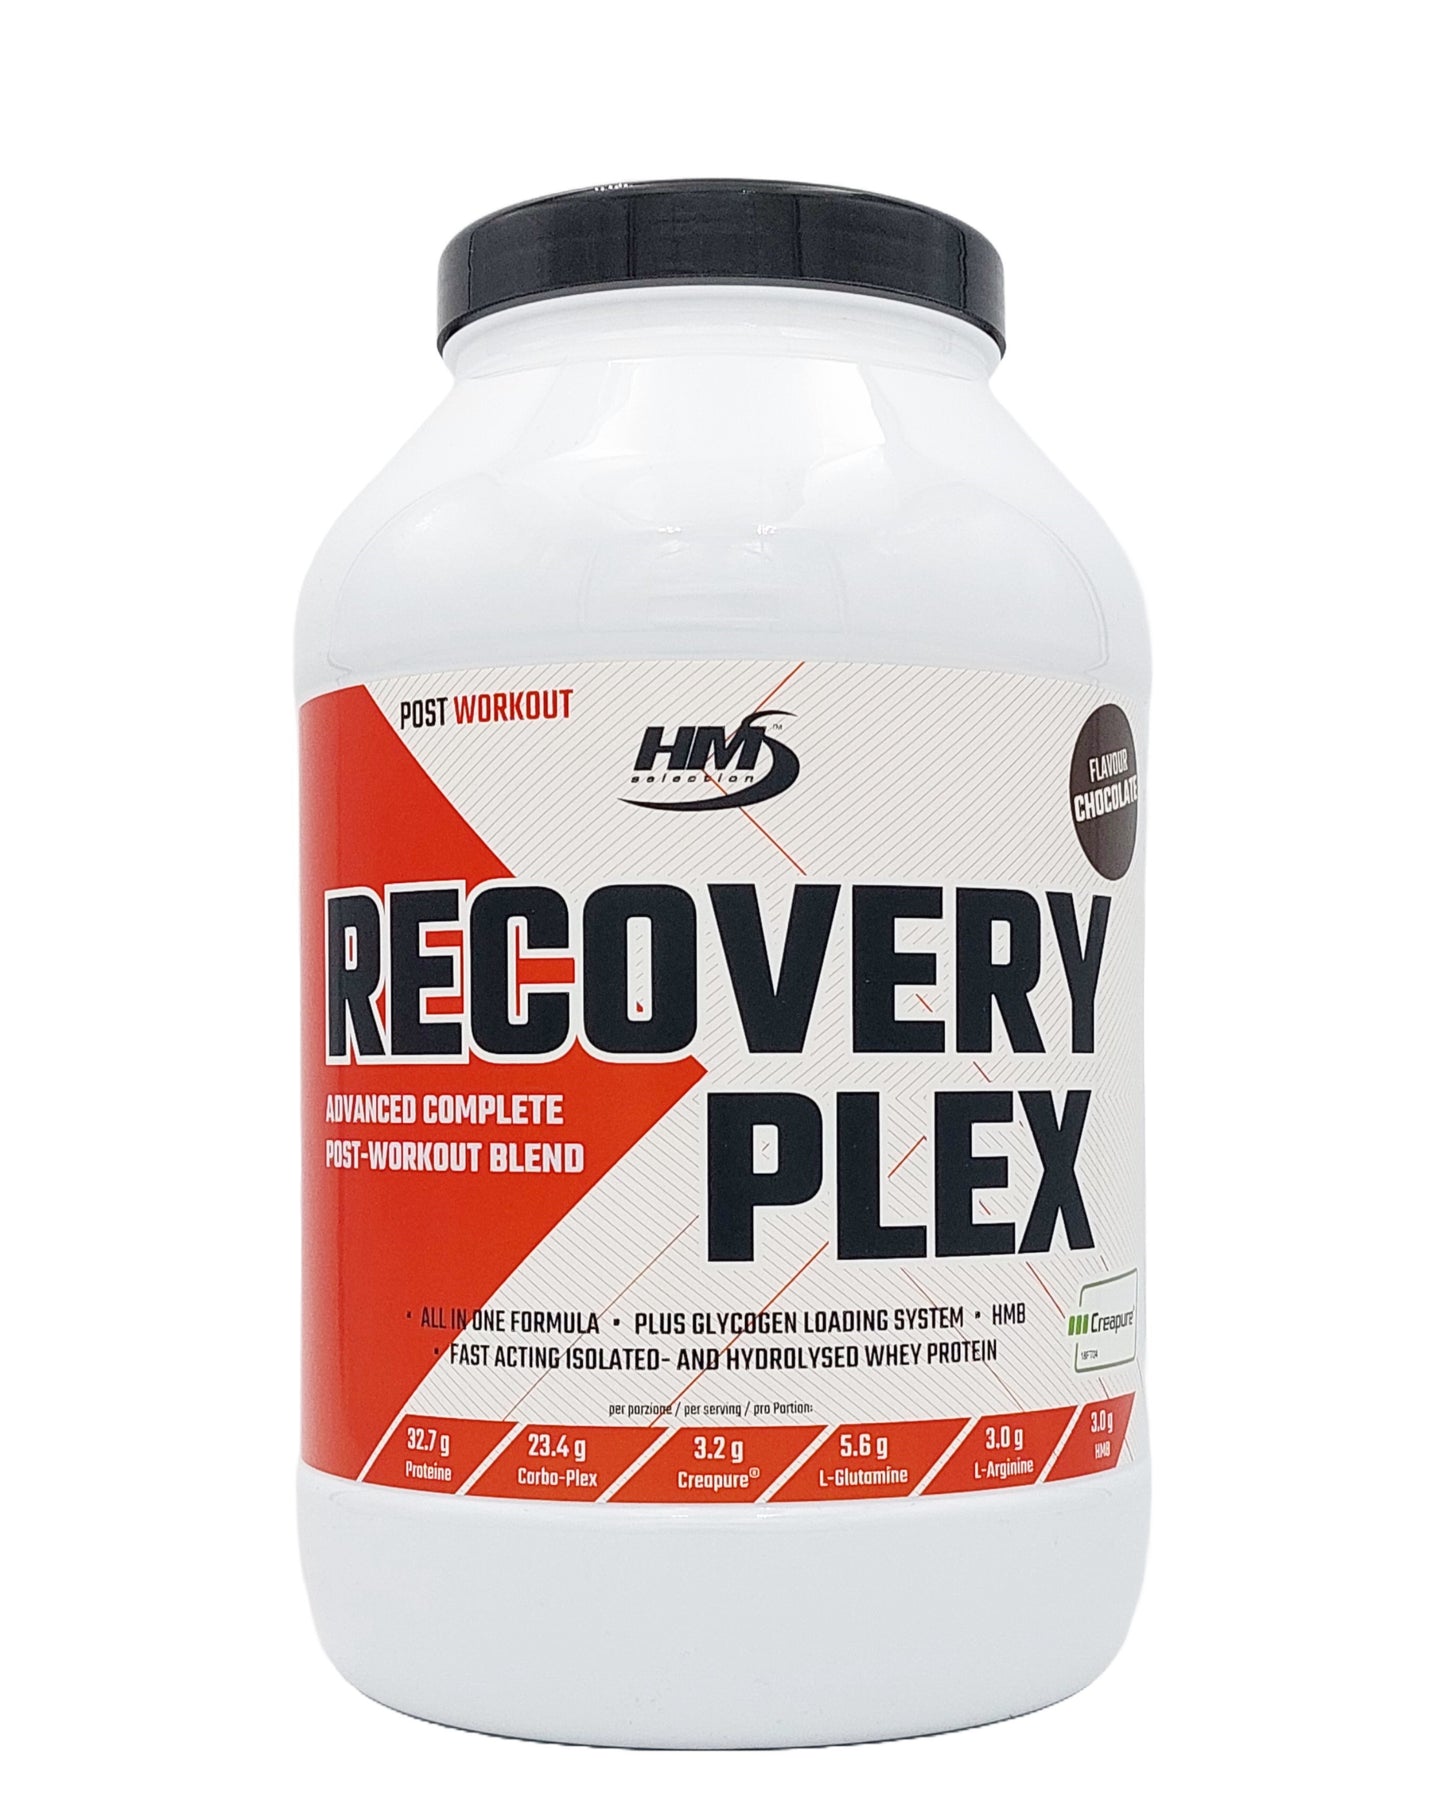 RECOVERY PLEX, 1800g - für schnelle Regeneration des Körpers nach Training